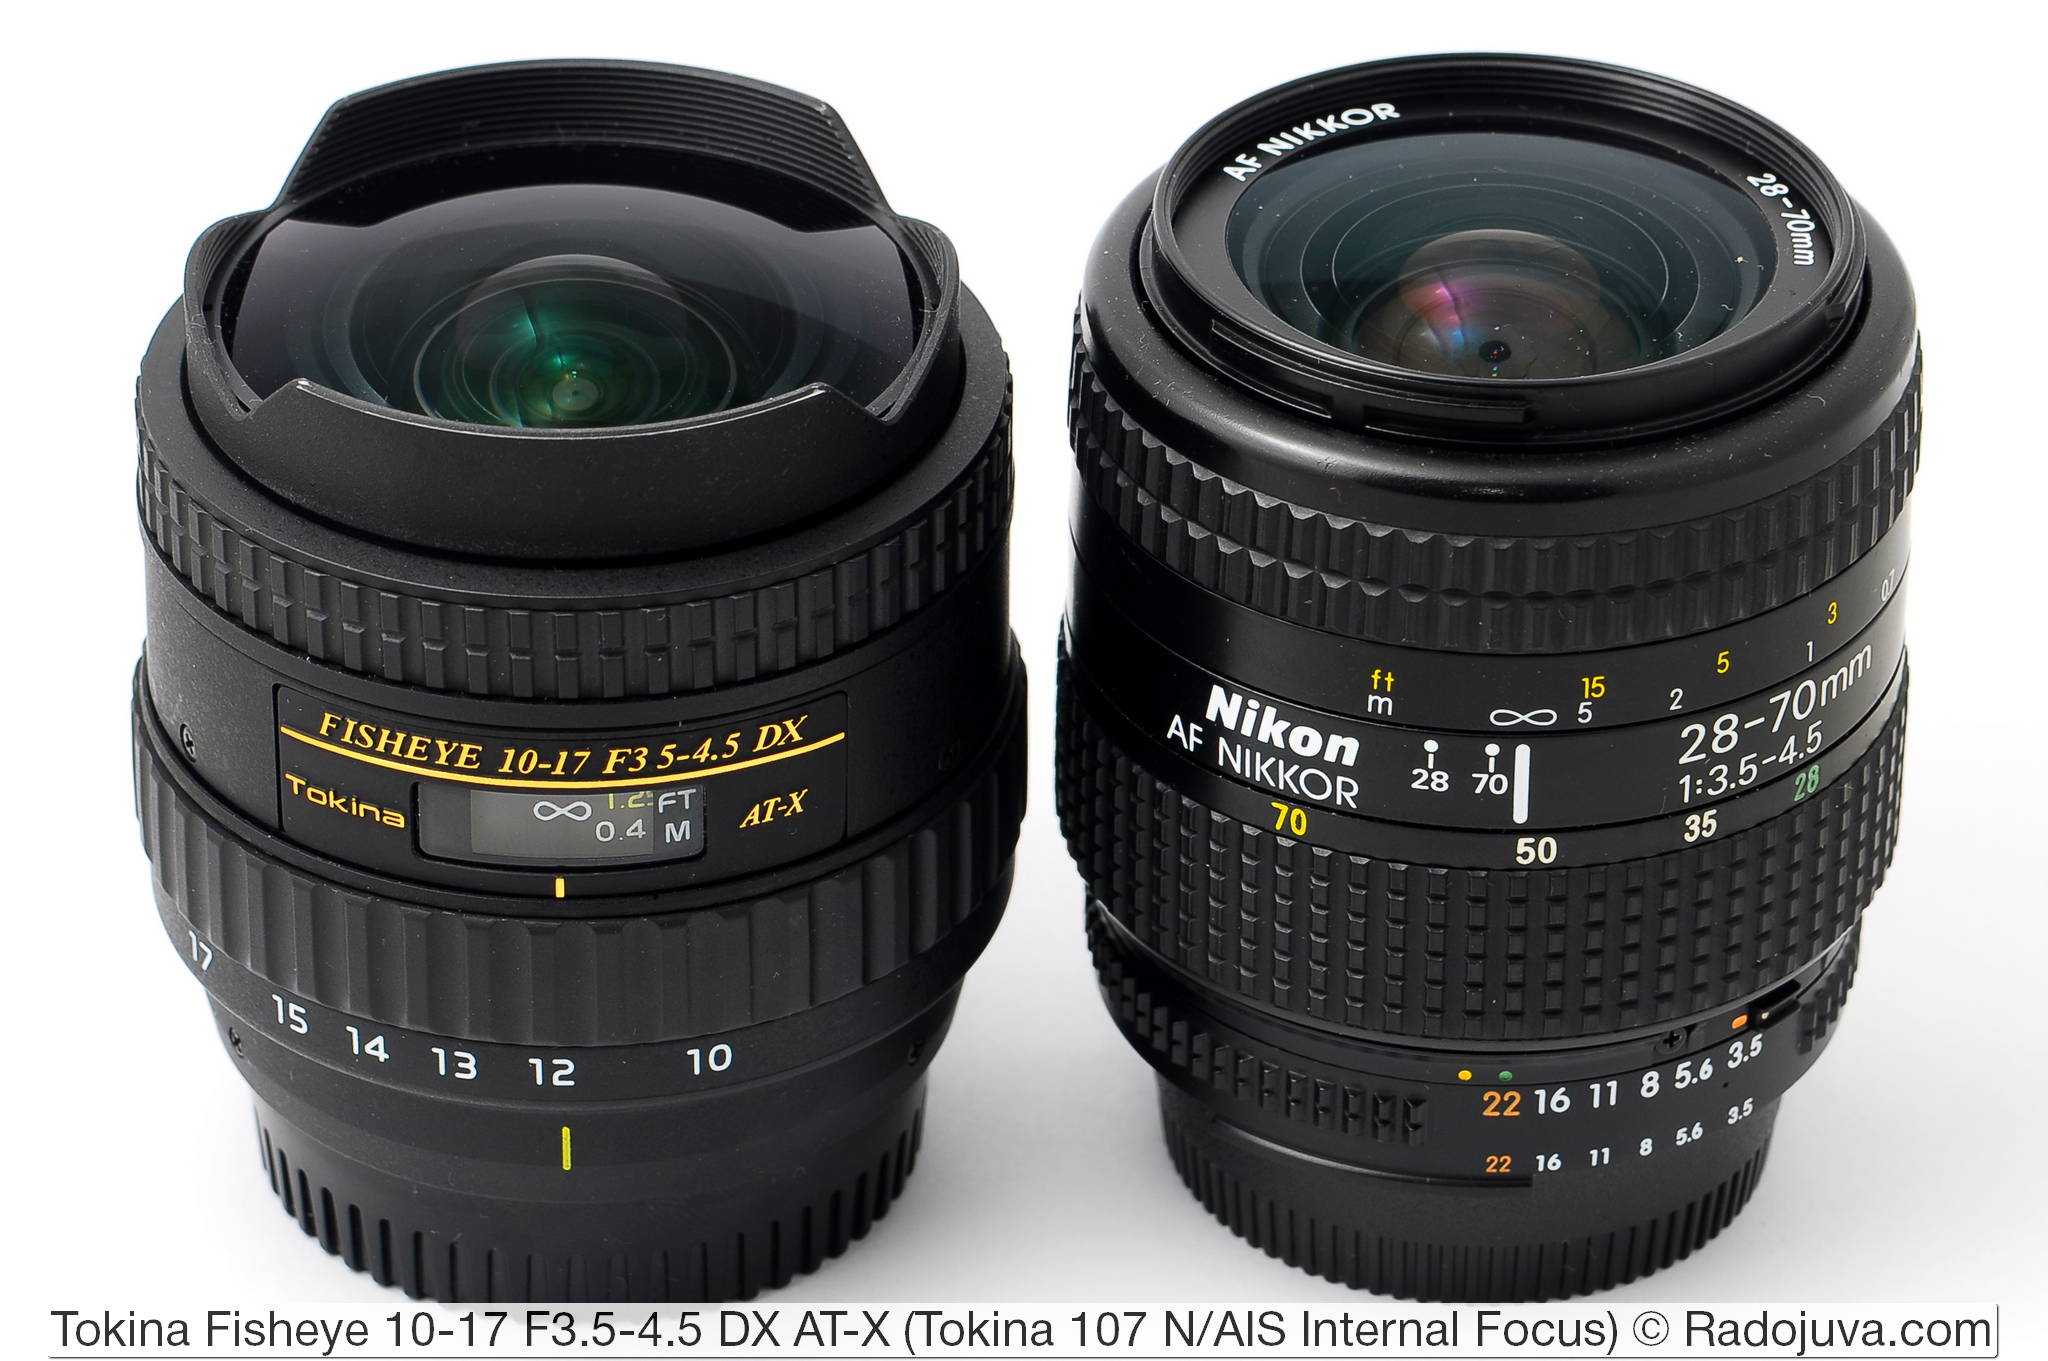 Afmetingen Tokina 107 Fisheye 10-17mm F3.5-4.5 DX AT-X Interne focus en Nikon AF Nikkor 28-70mm 1: 3.5-4.5 (MKI)